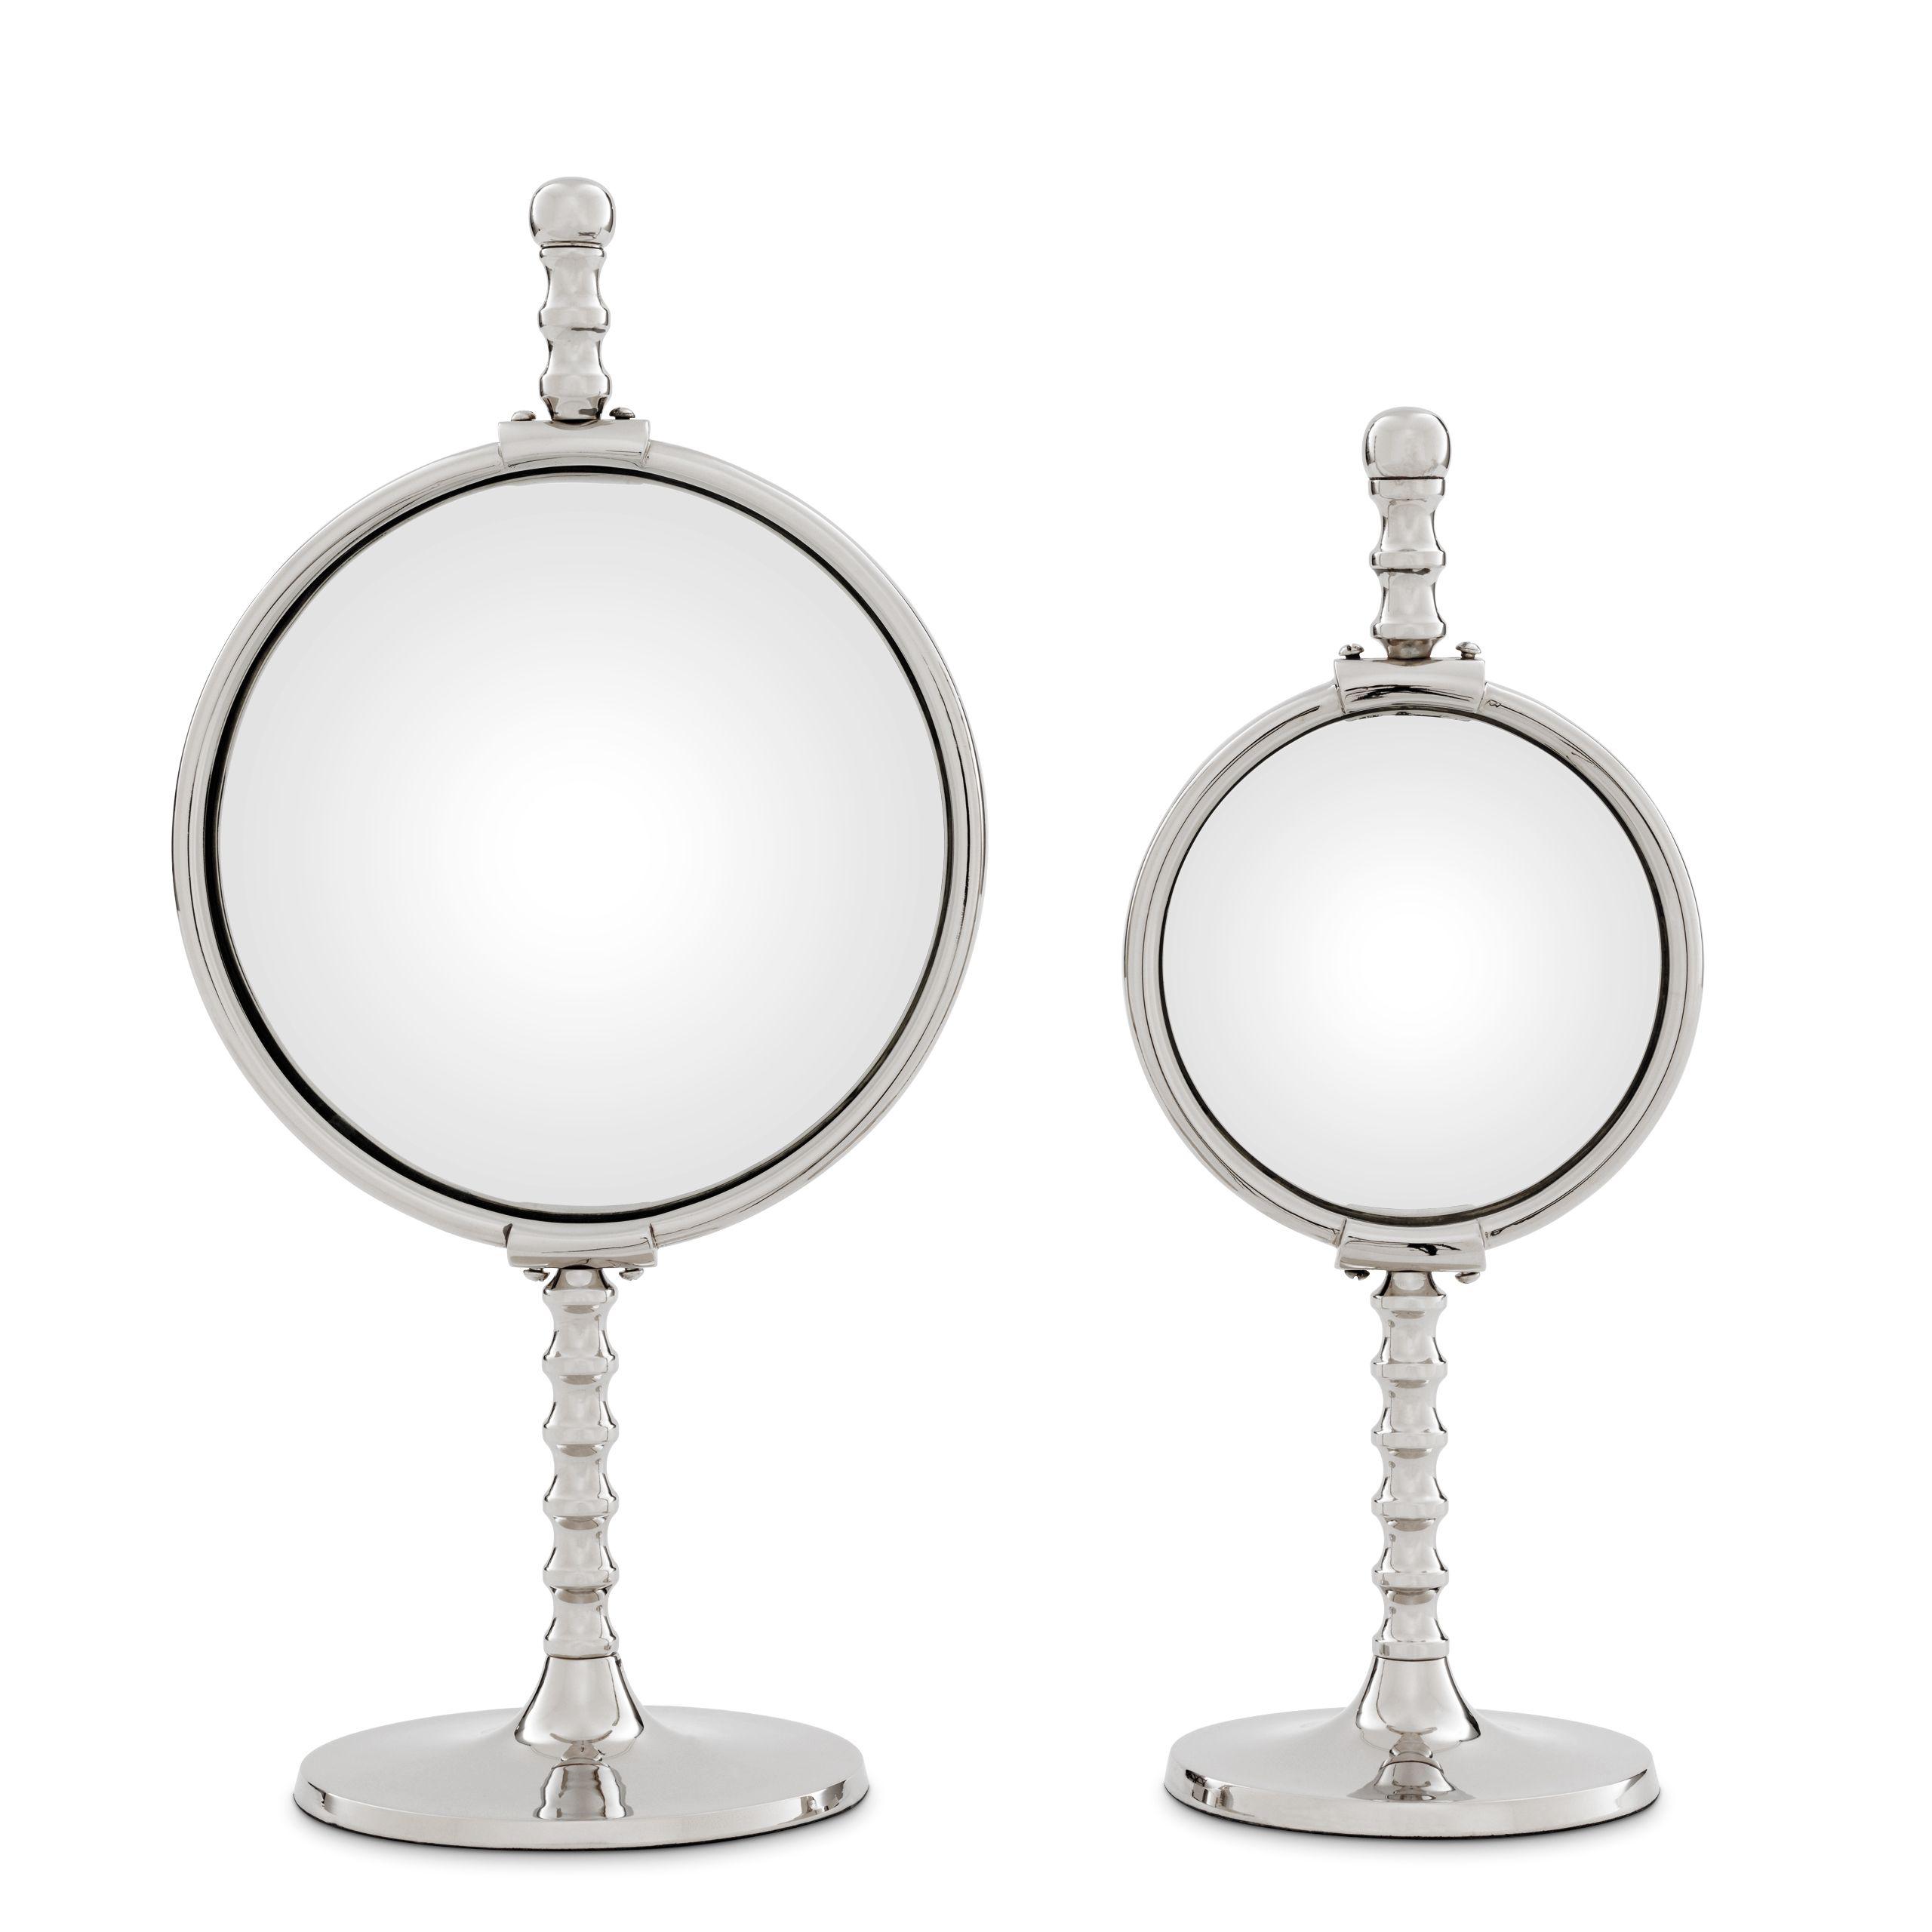 Купить Настольное зеркало Mirror Floyd set of 2 в интернет-магазине roooms.ru